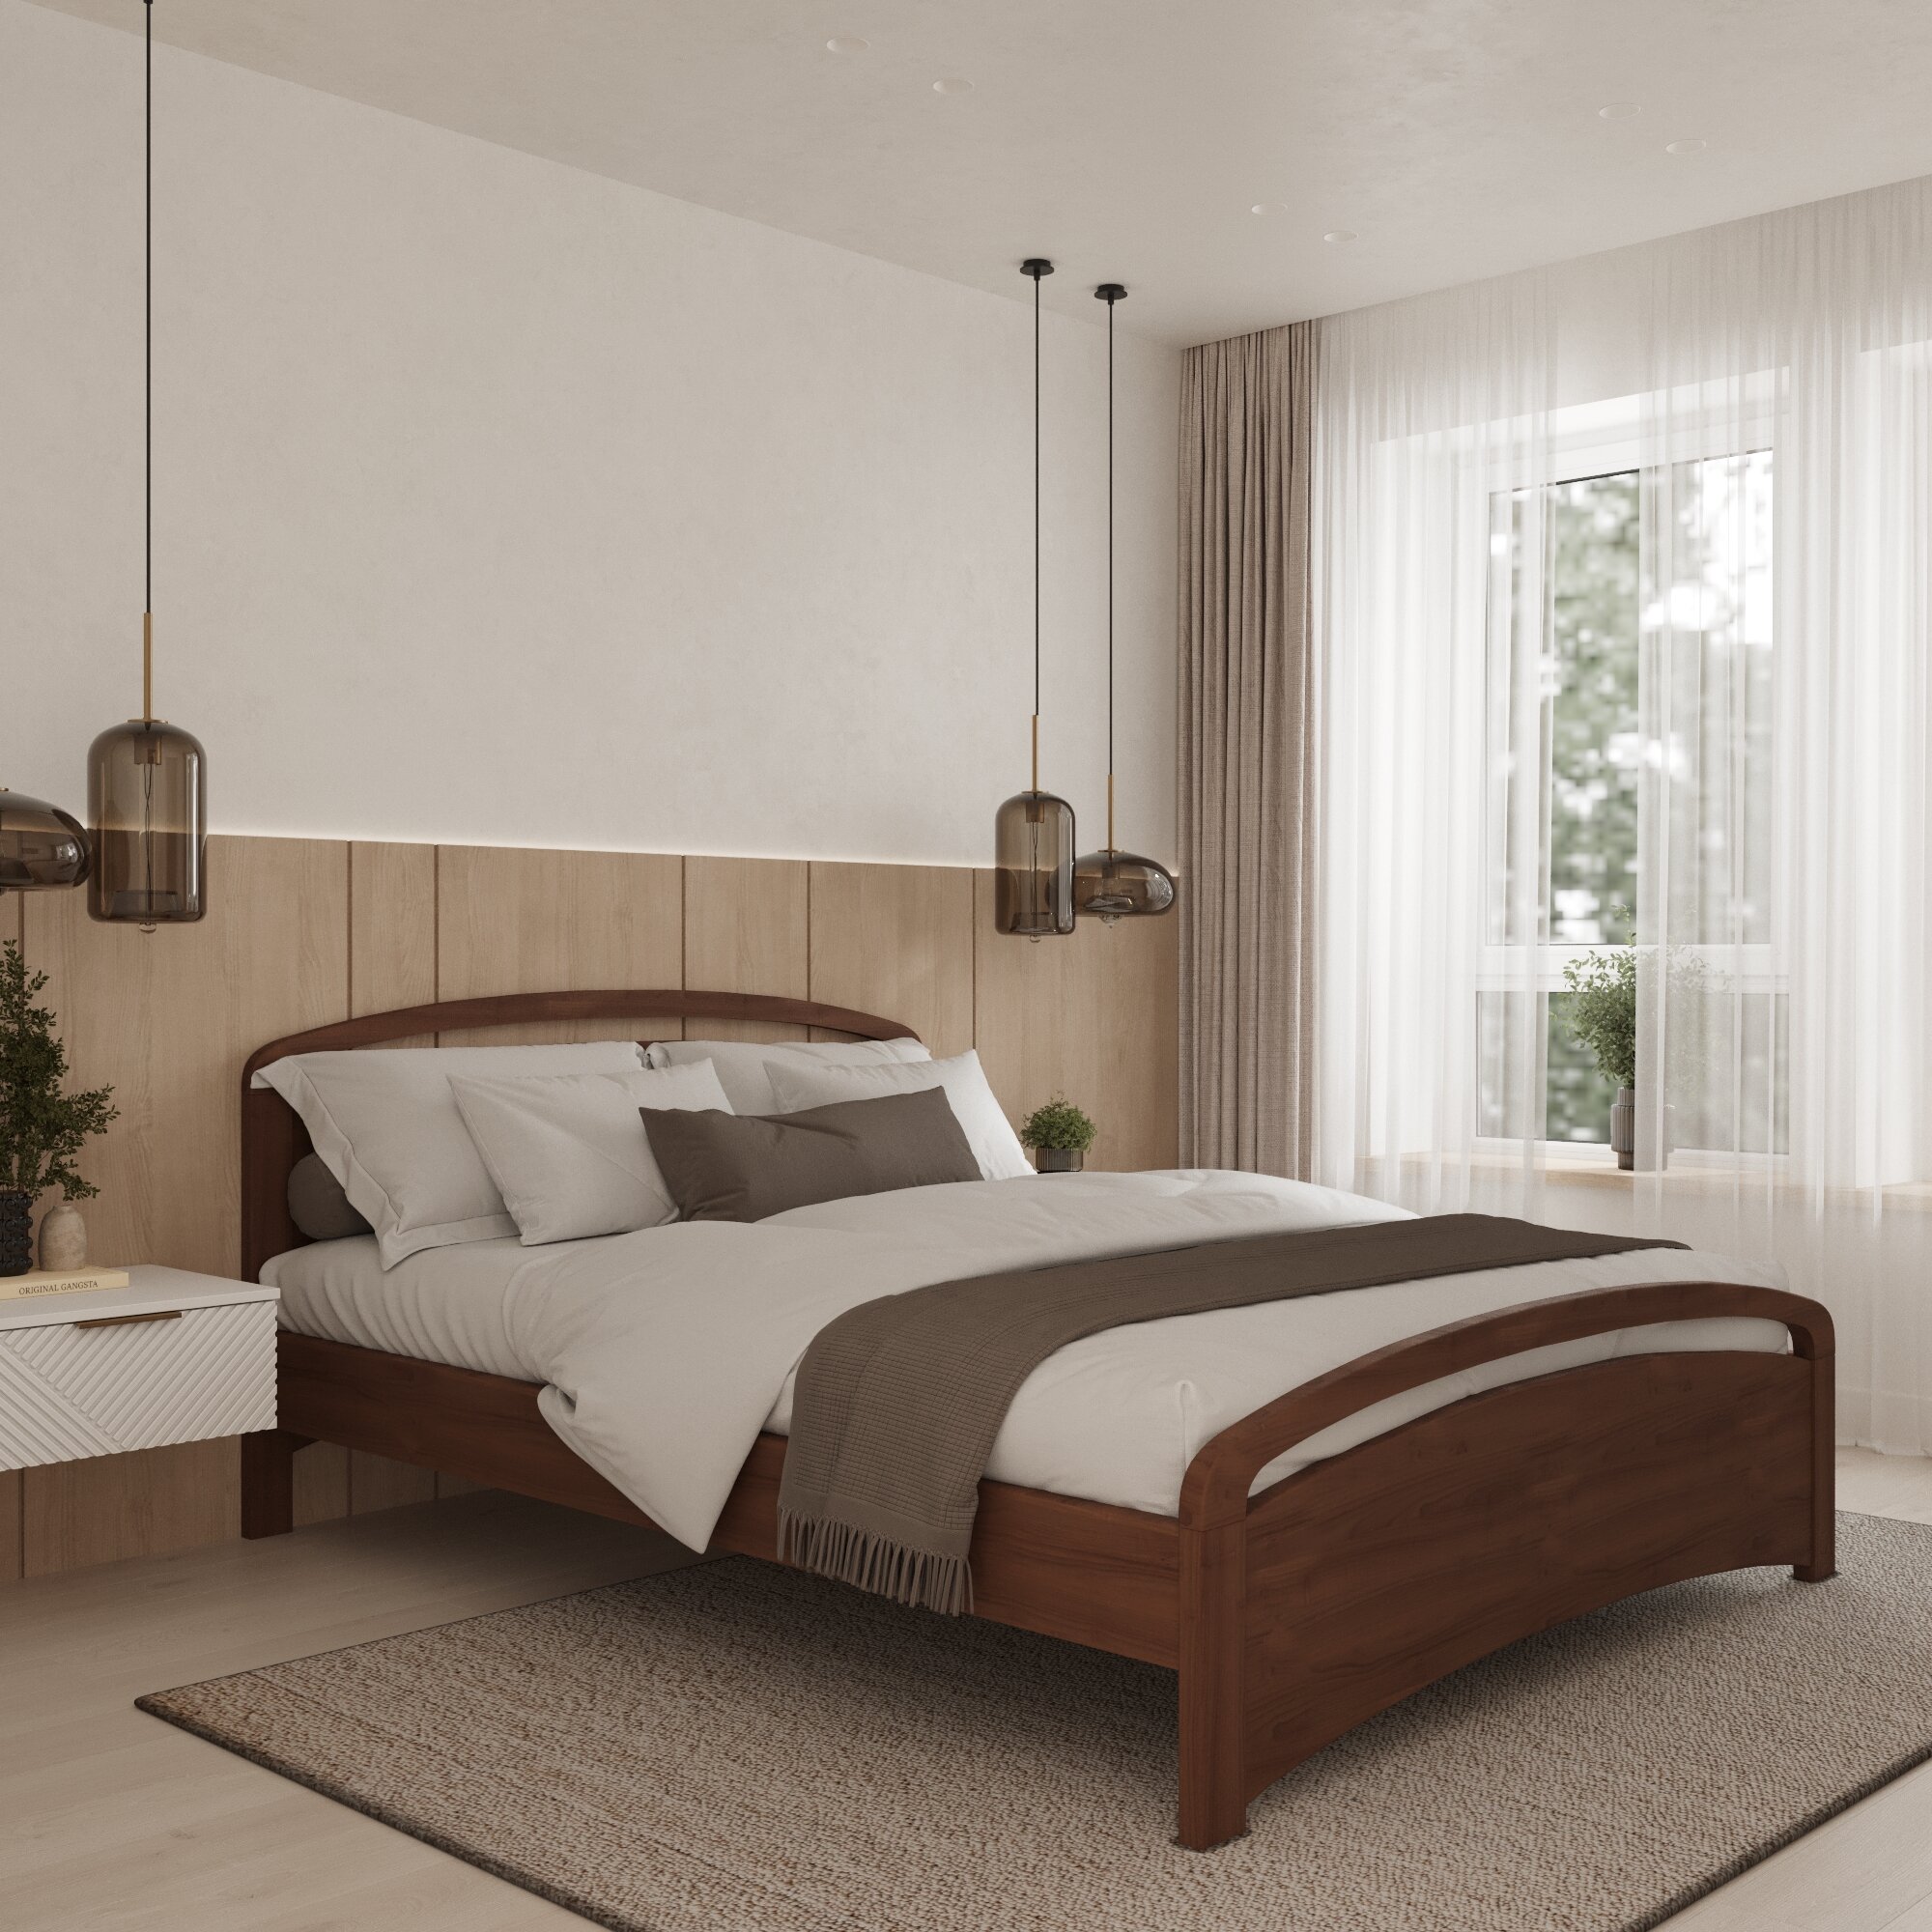 Двуспальная кровать Кровать деревянная Бали Люкс 120*200, 120х200 см, ММК-Древ